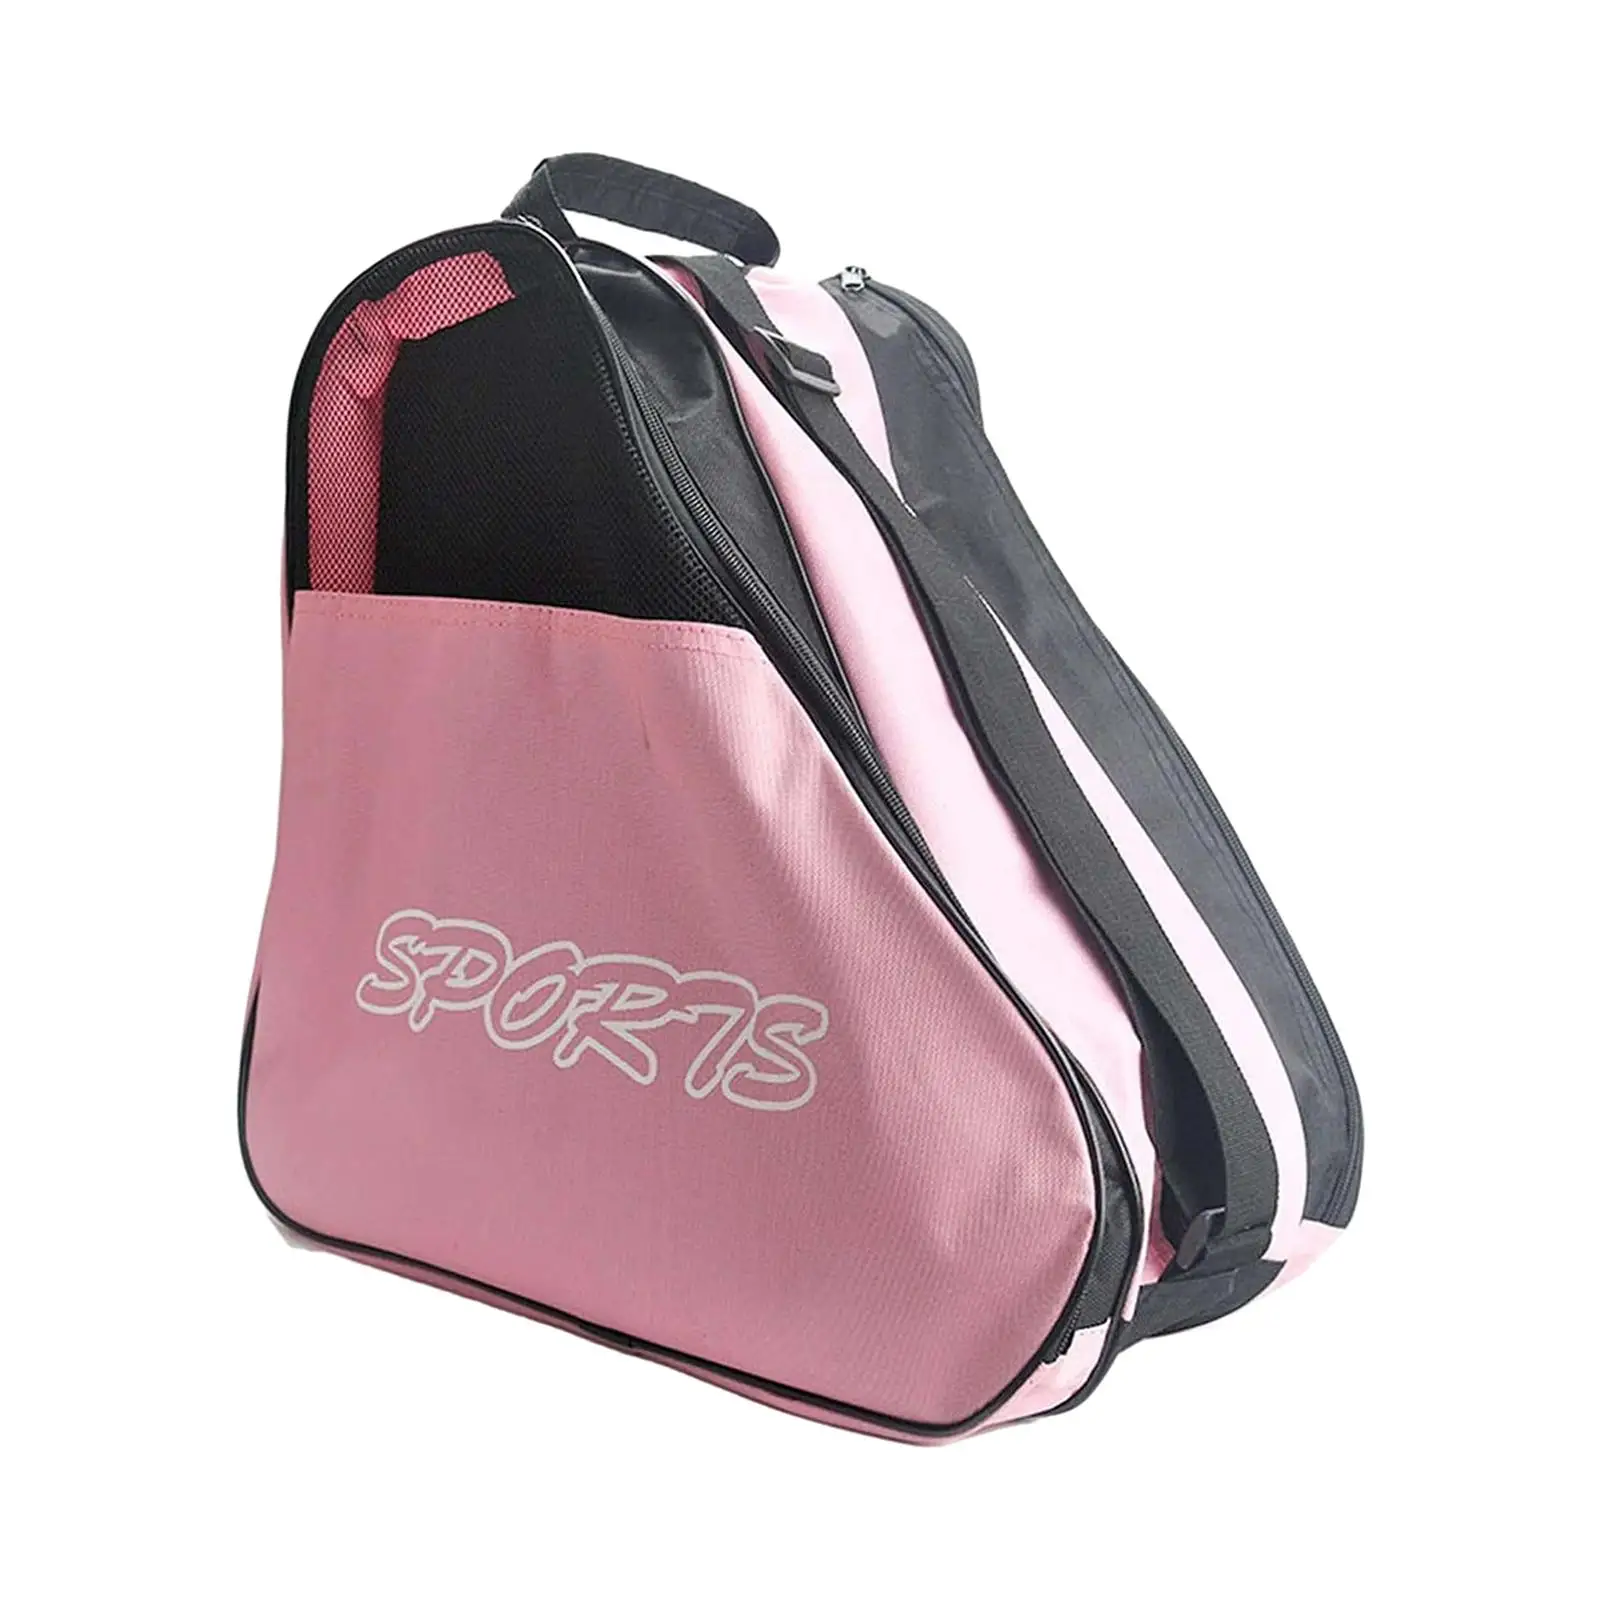 Roller Skates Bag Breathable Portable Skates Storage Bag Triangle Skates Bag Skating Shoes Bag for Girls Men Women Kids Boys